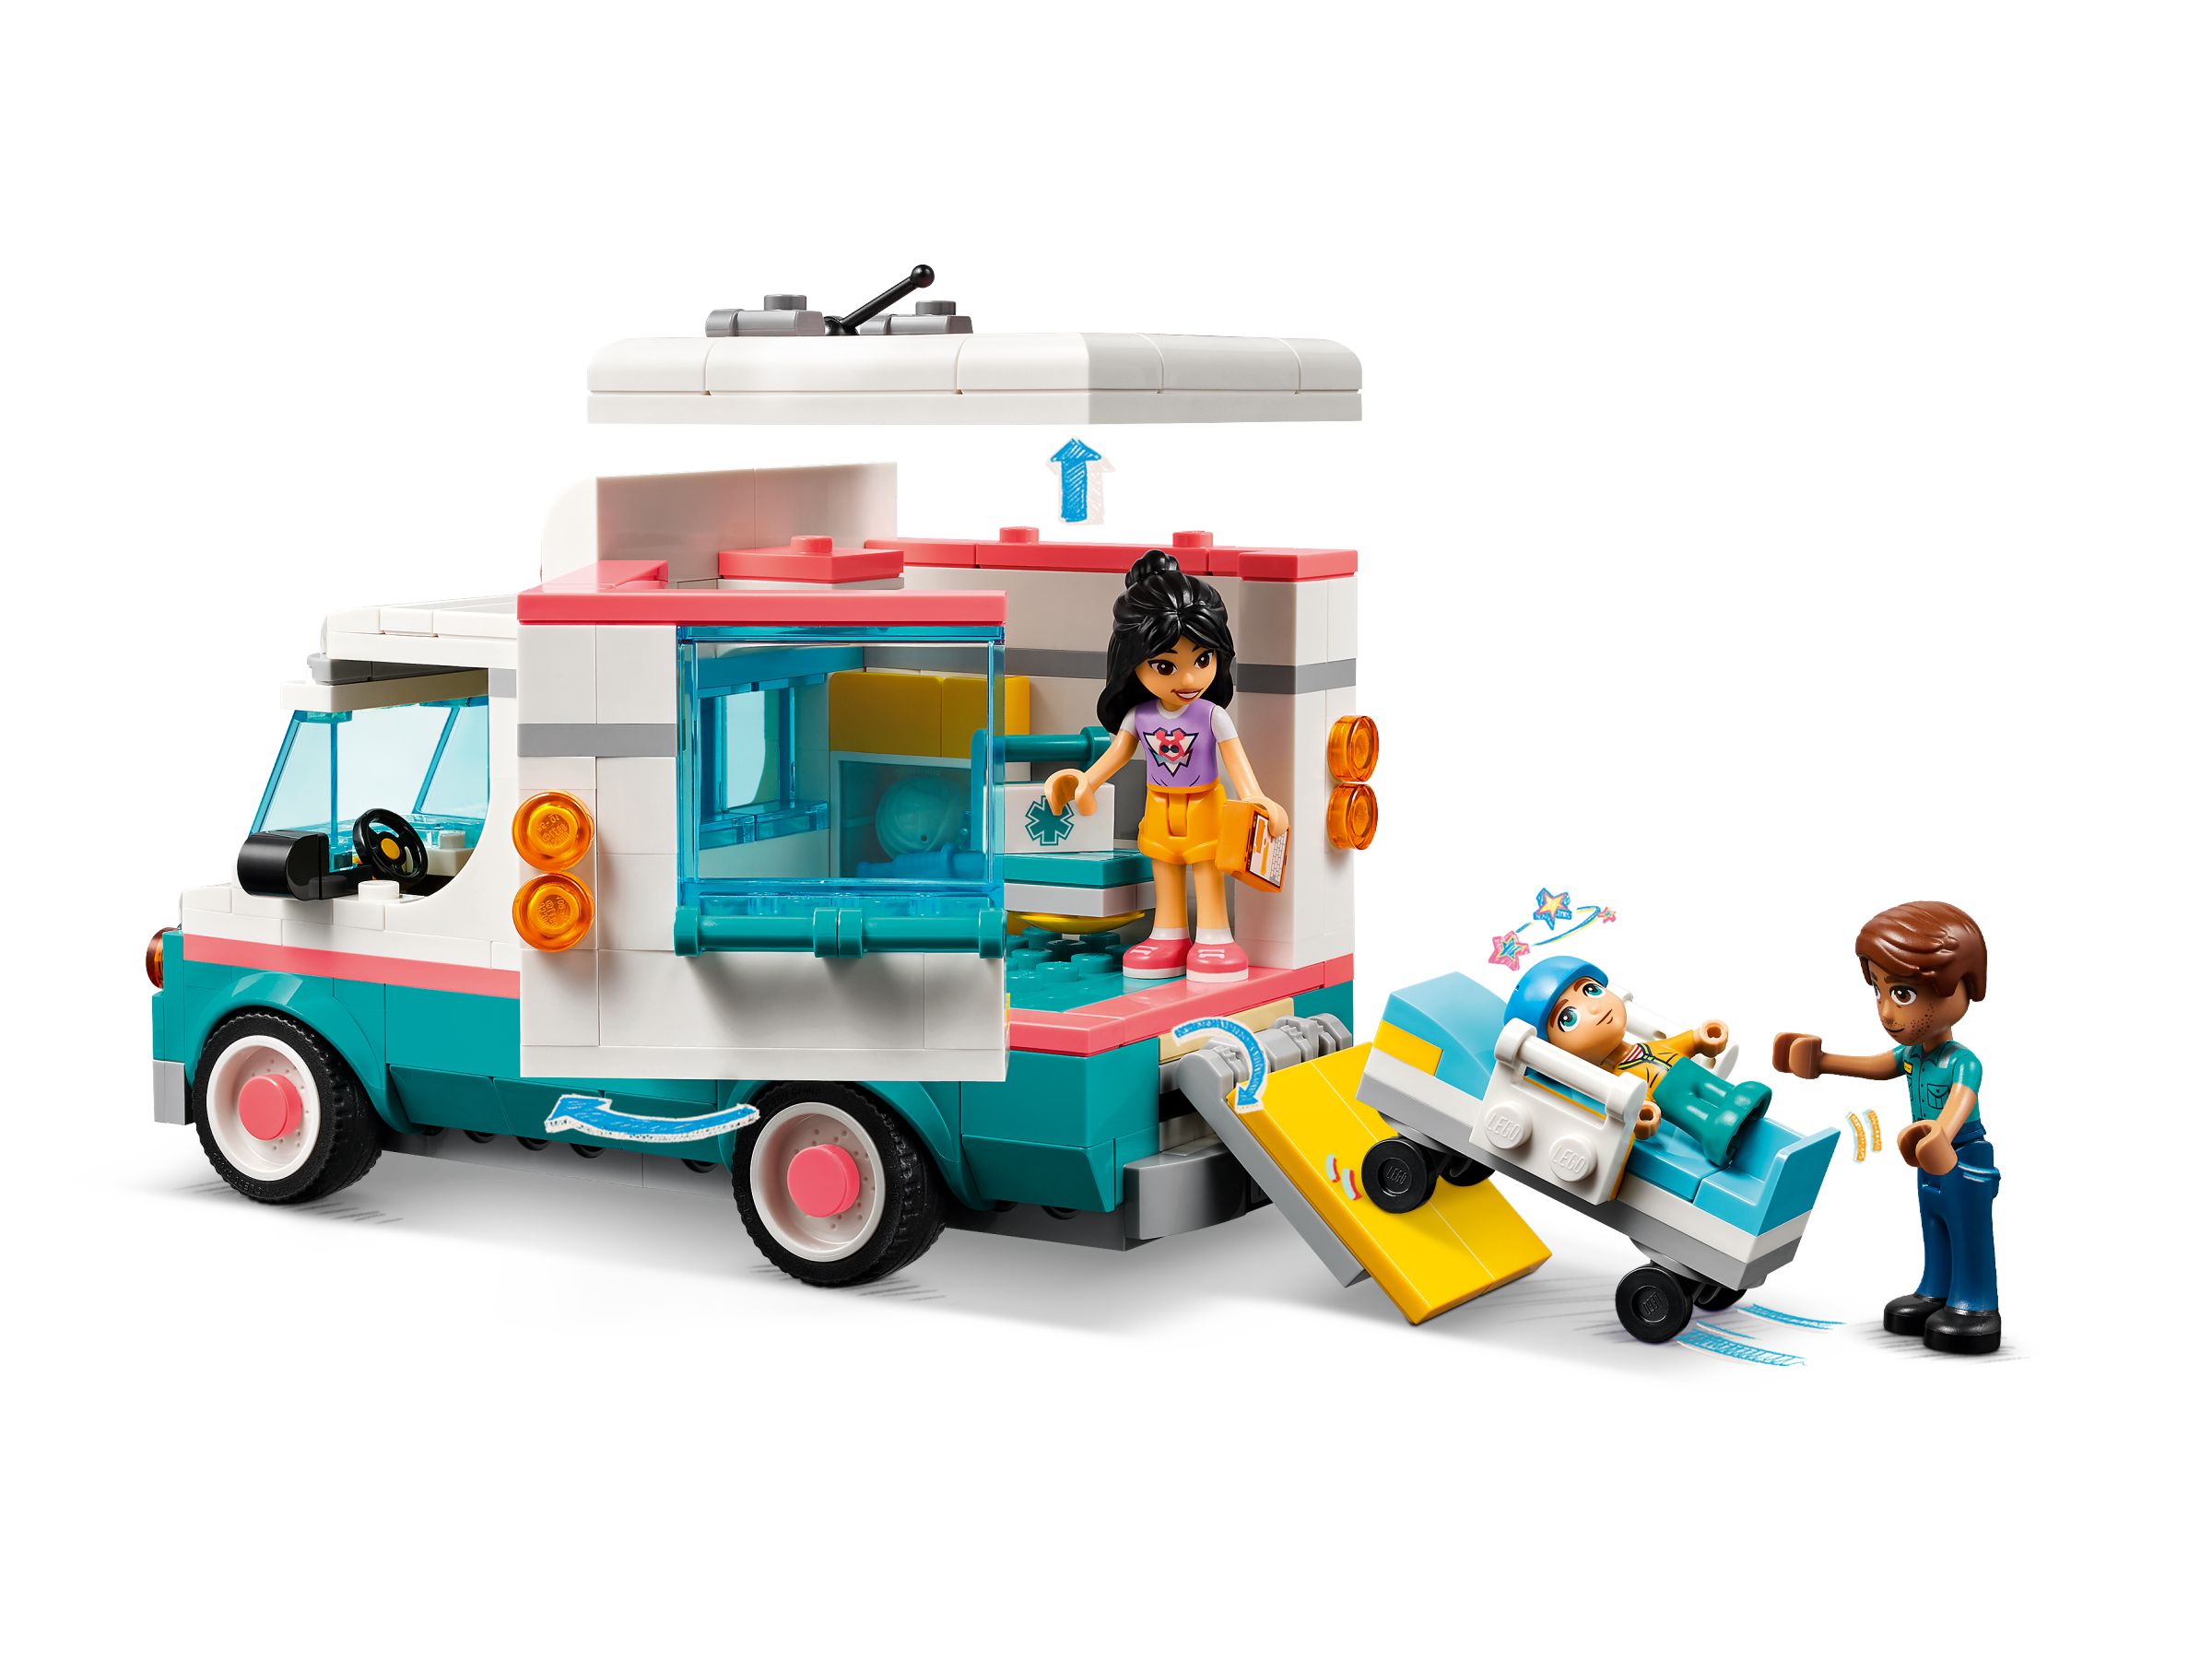 LEGO Friends 42613 Heartlake City Rettungswagen LEGO_42613_alt2.jpg